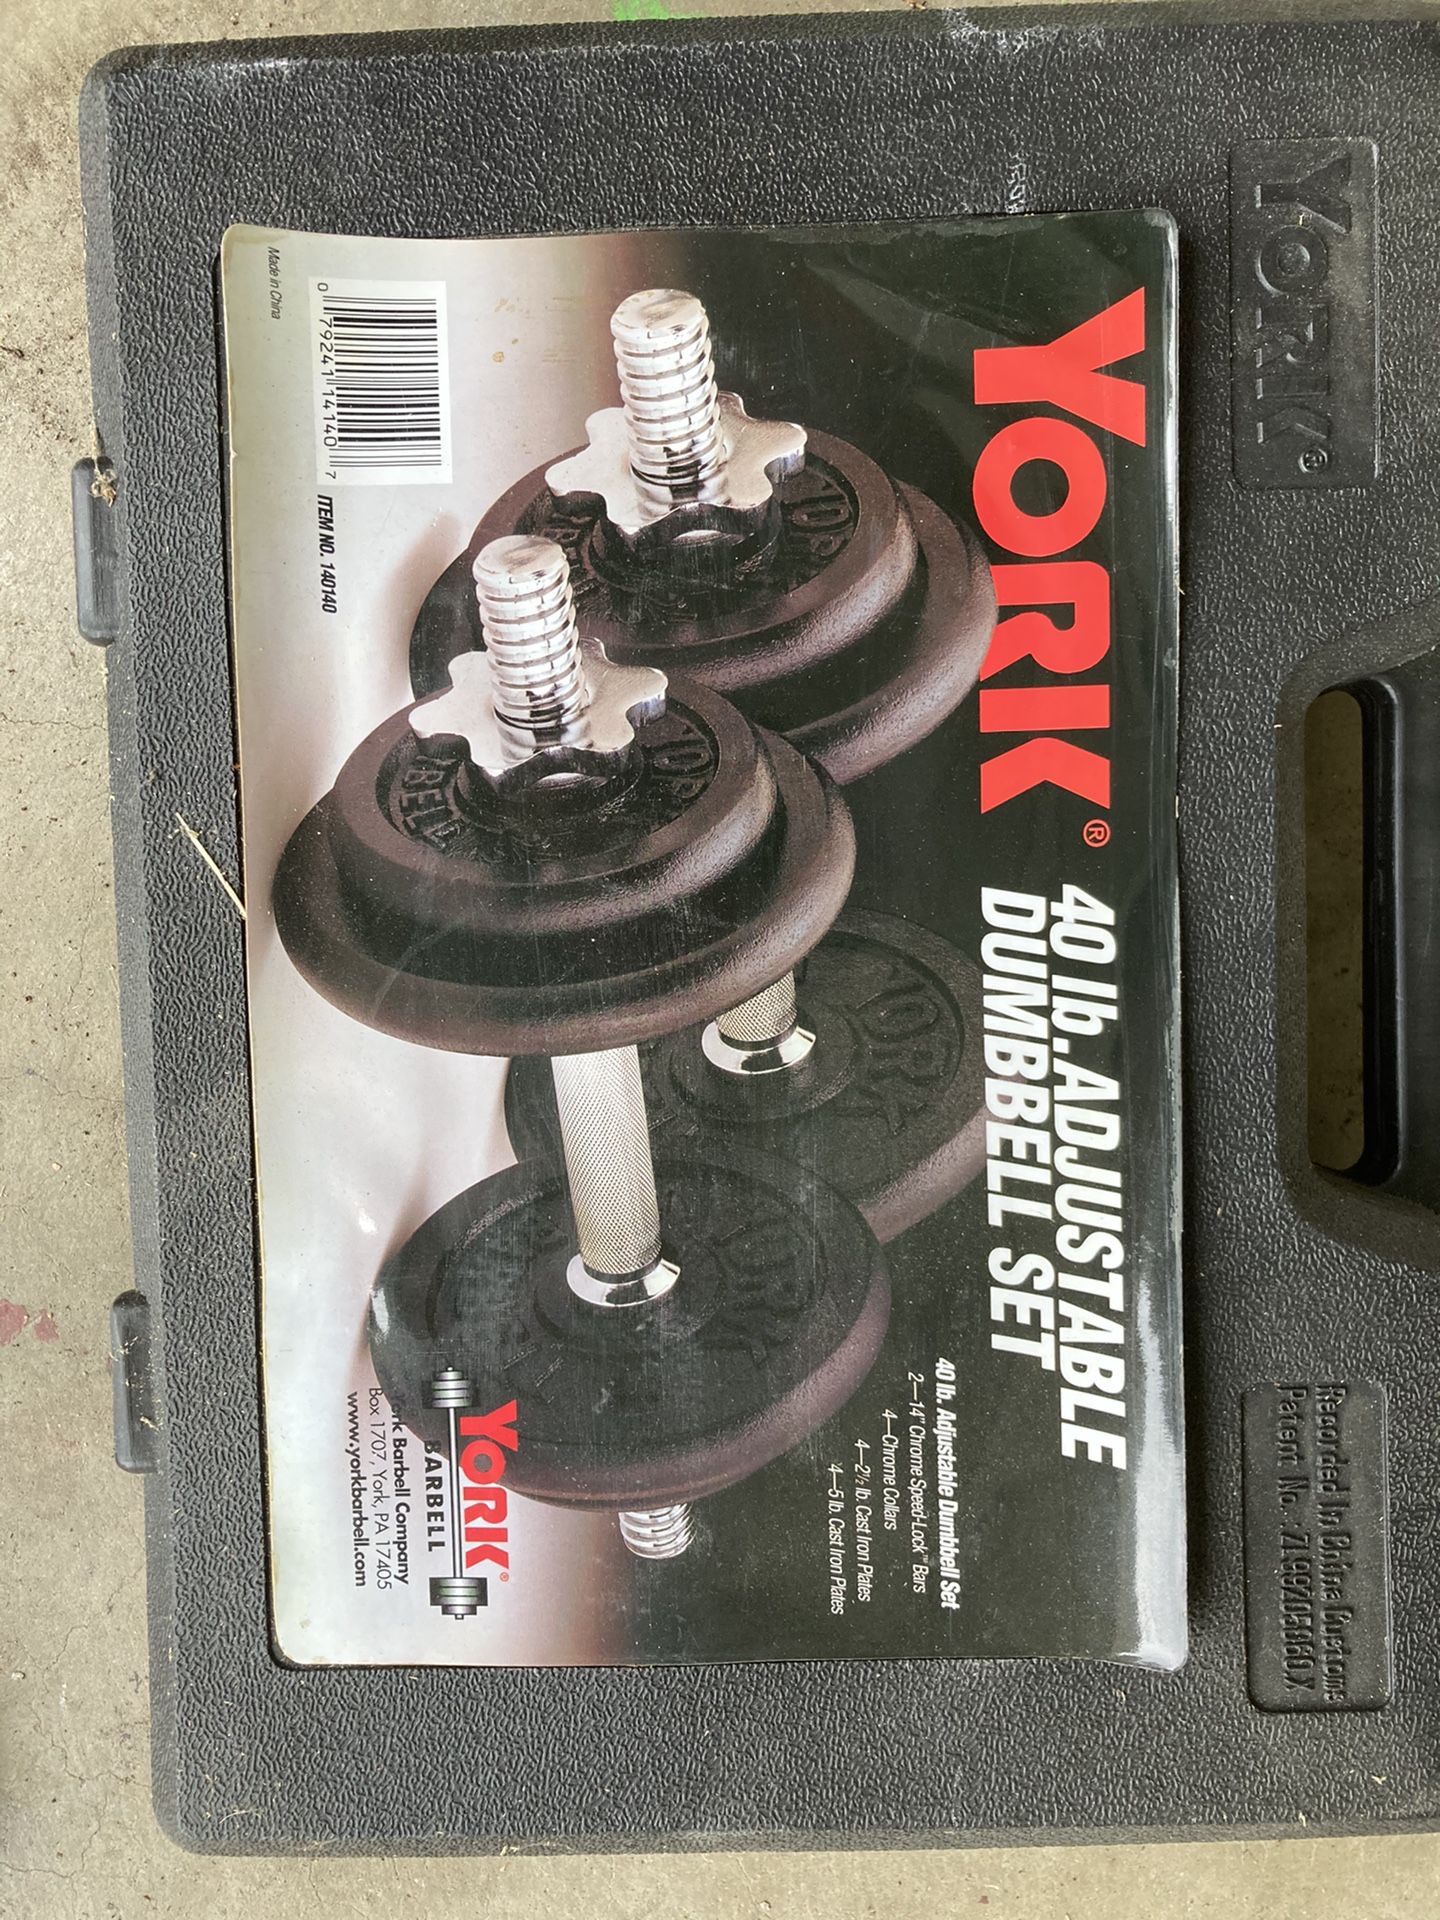 York. 40 lb. adjustable dumbbell set